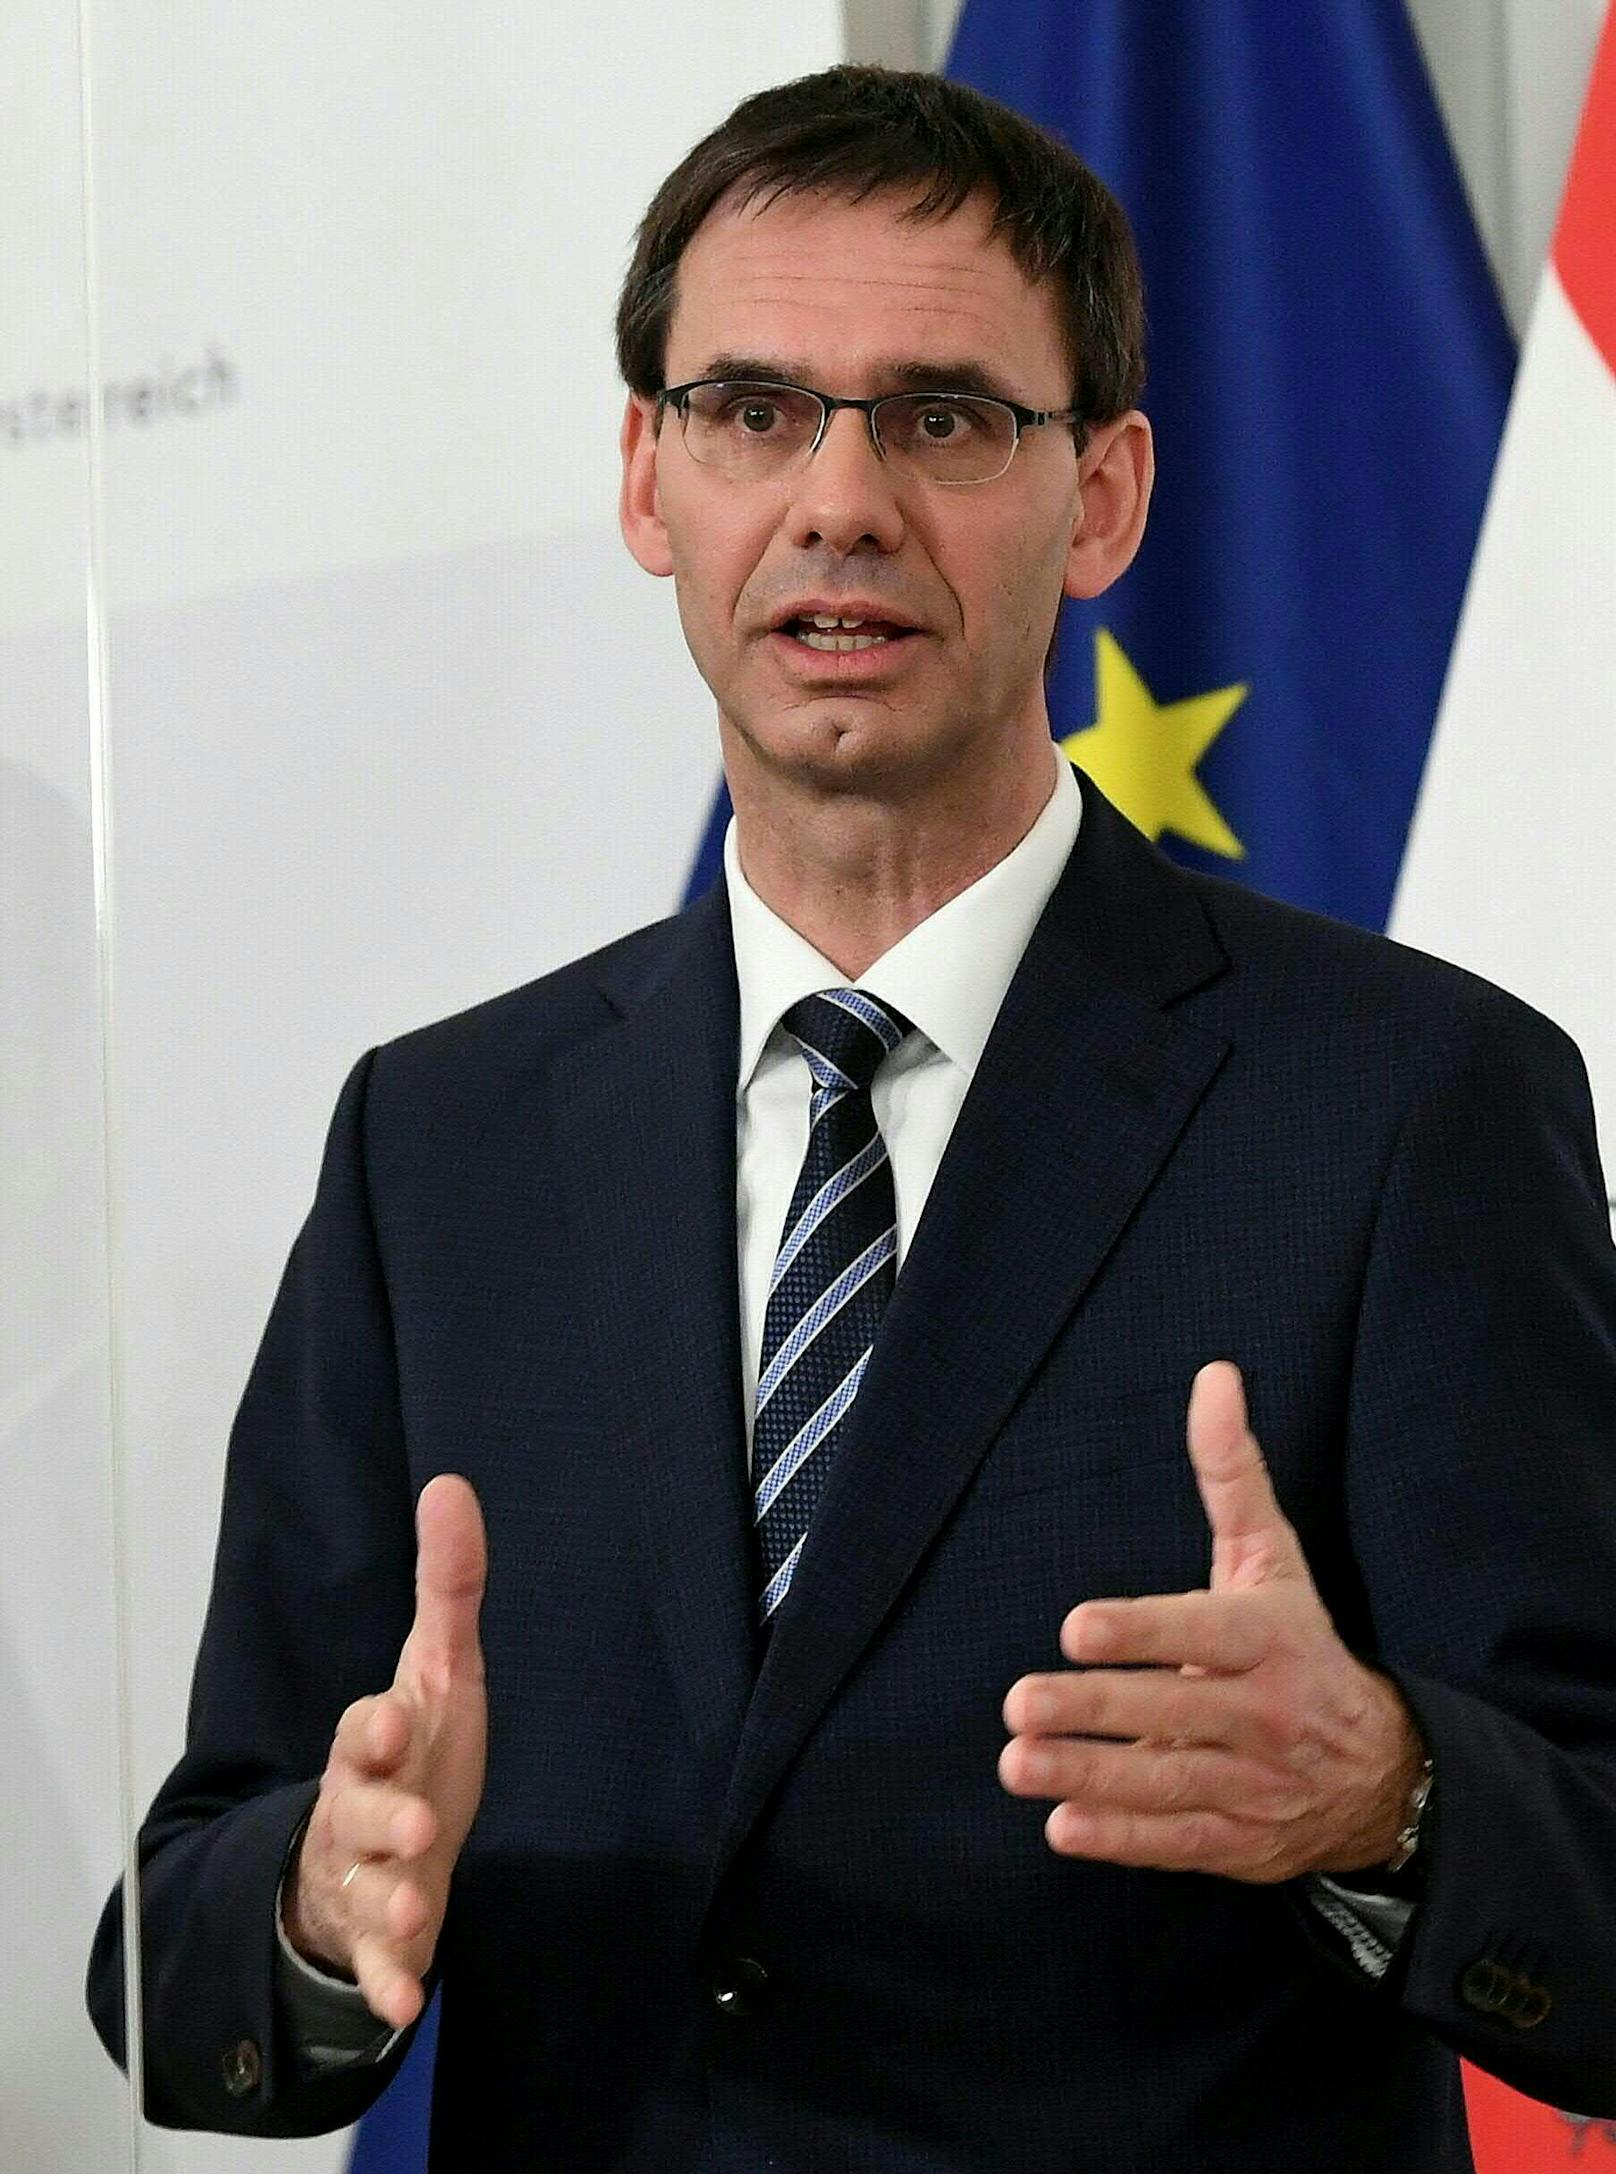 Vorarlbergs Landeshauptmann Markus Wallner (ÖVP) am Montag, 1. März 2021, während einer Pressekonferenz nach einem Corona-Gipfel im Bundeskanzleramt in Wien.